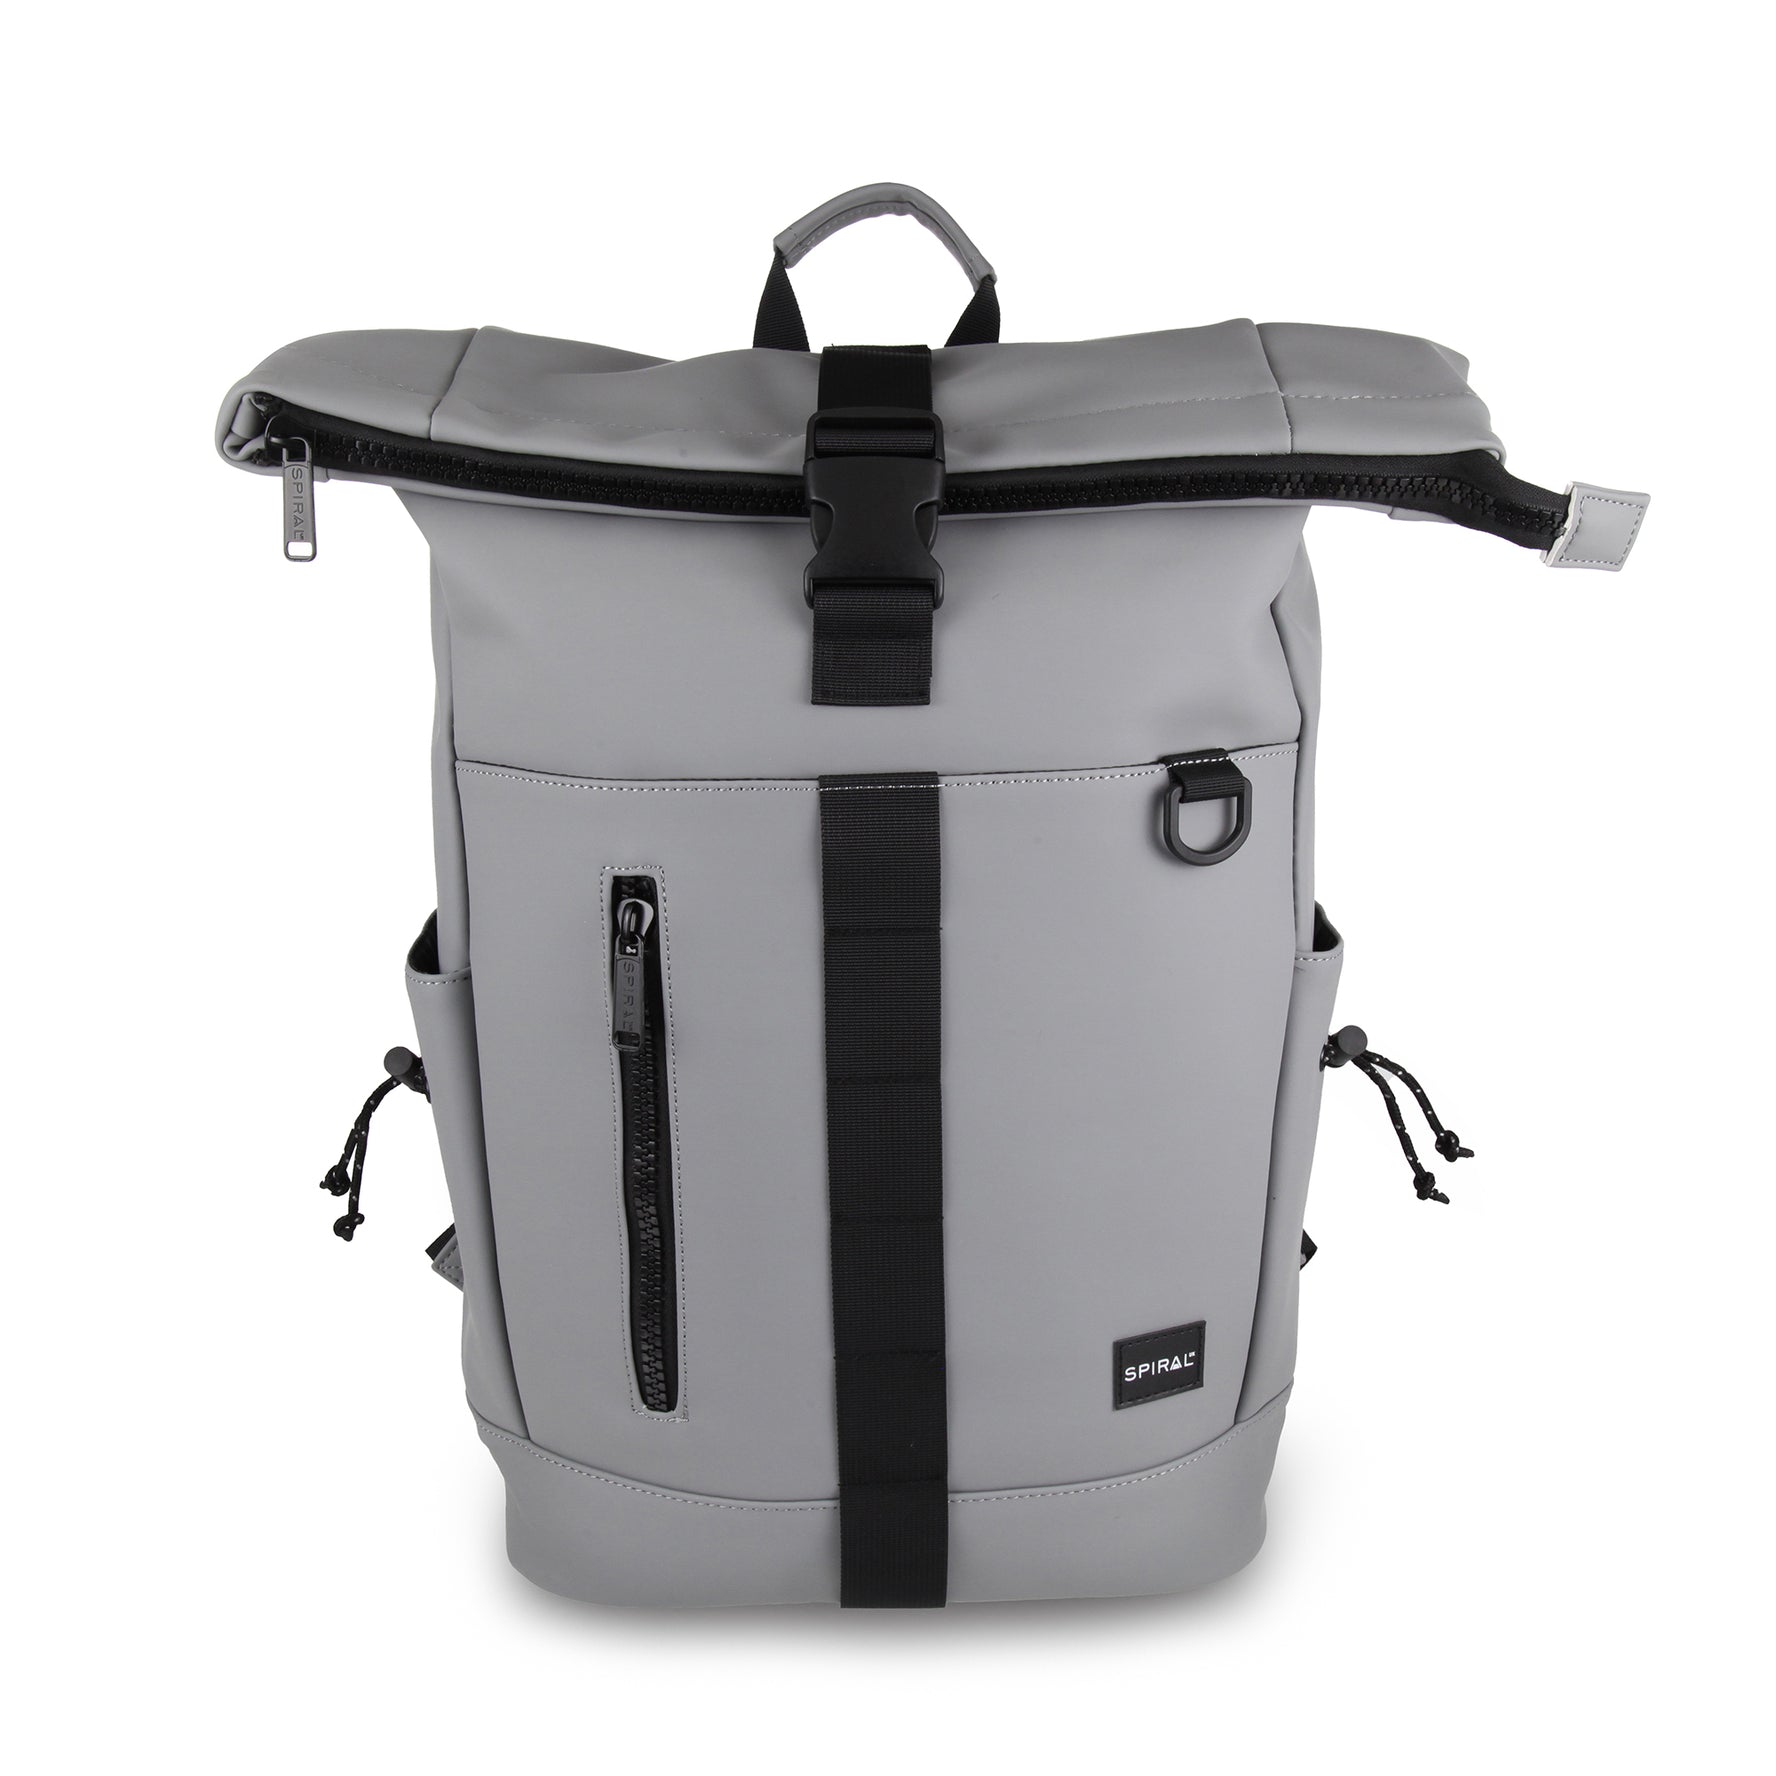 Transporter Deluxe Backpack-Backpack-Spiral-Charcoal-SchoolBagsAndStuff